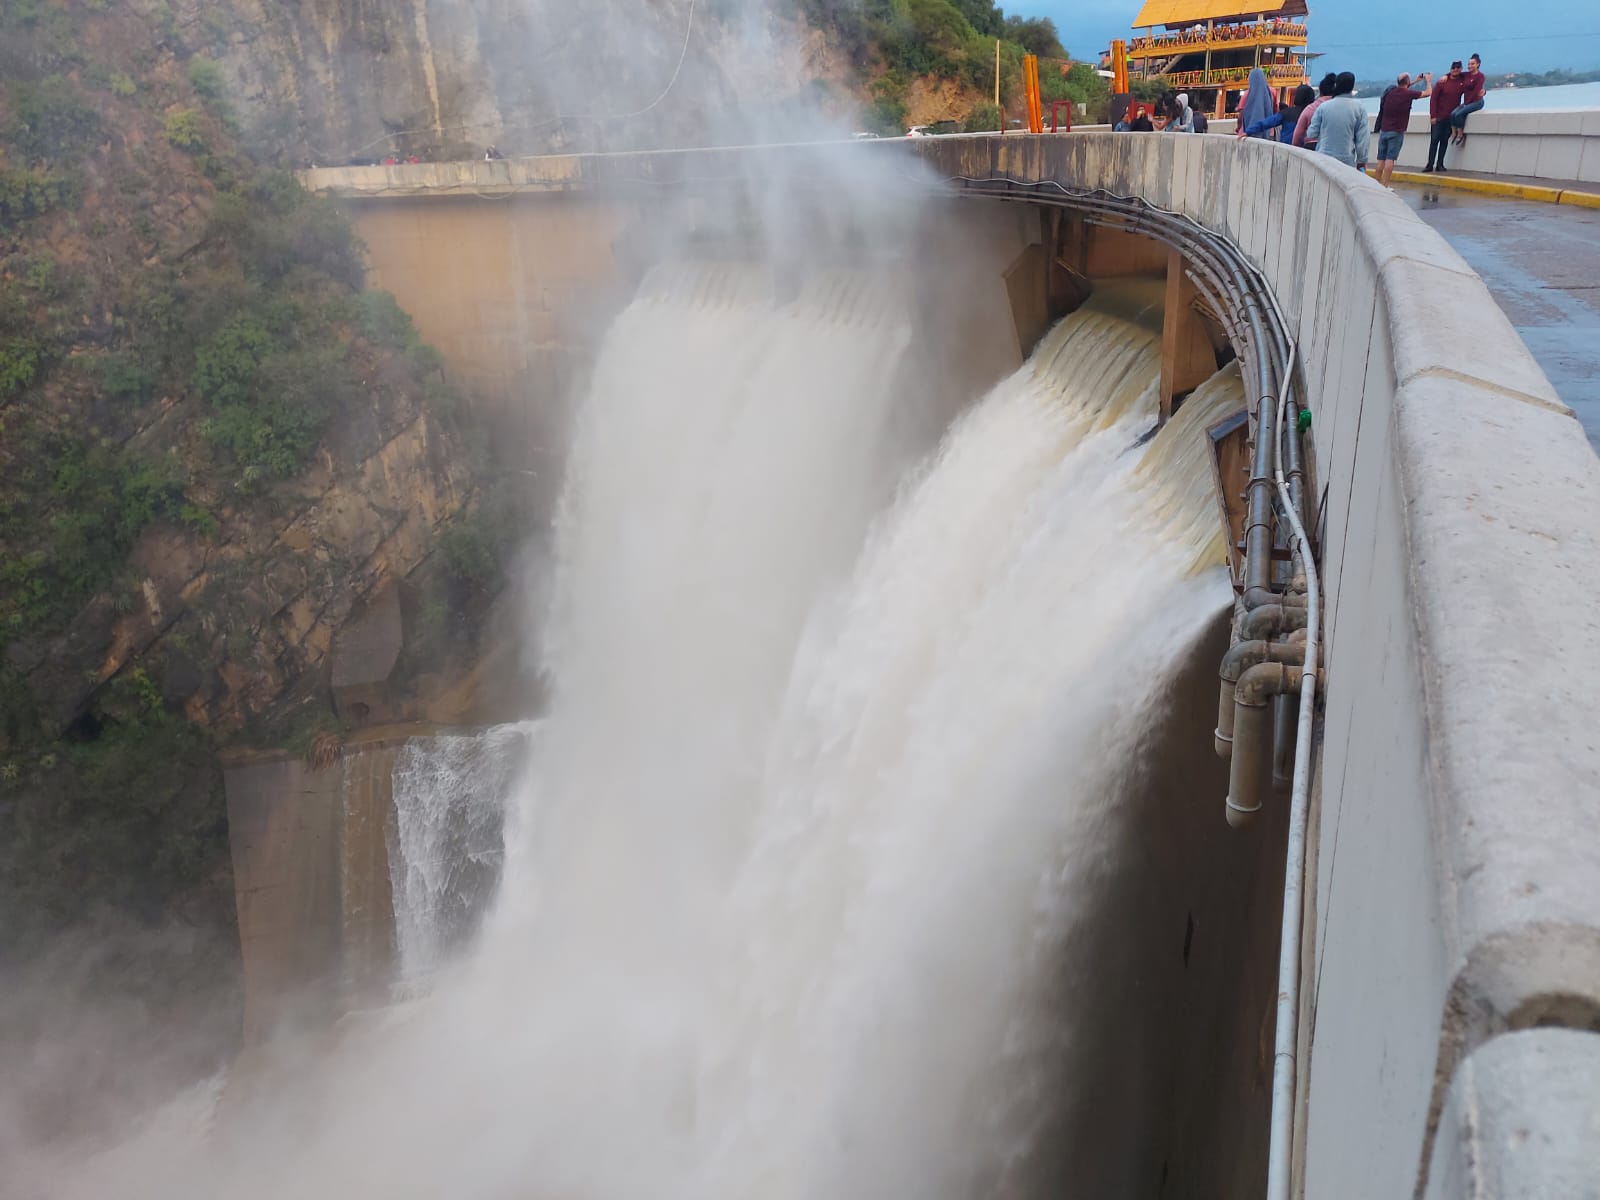 Estiman costo de 570 millones de bolivianos para cambio de acueducto en San Jacinto